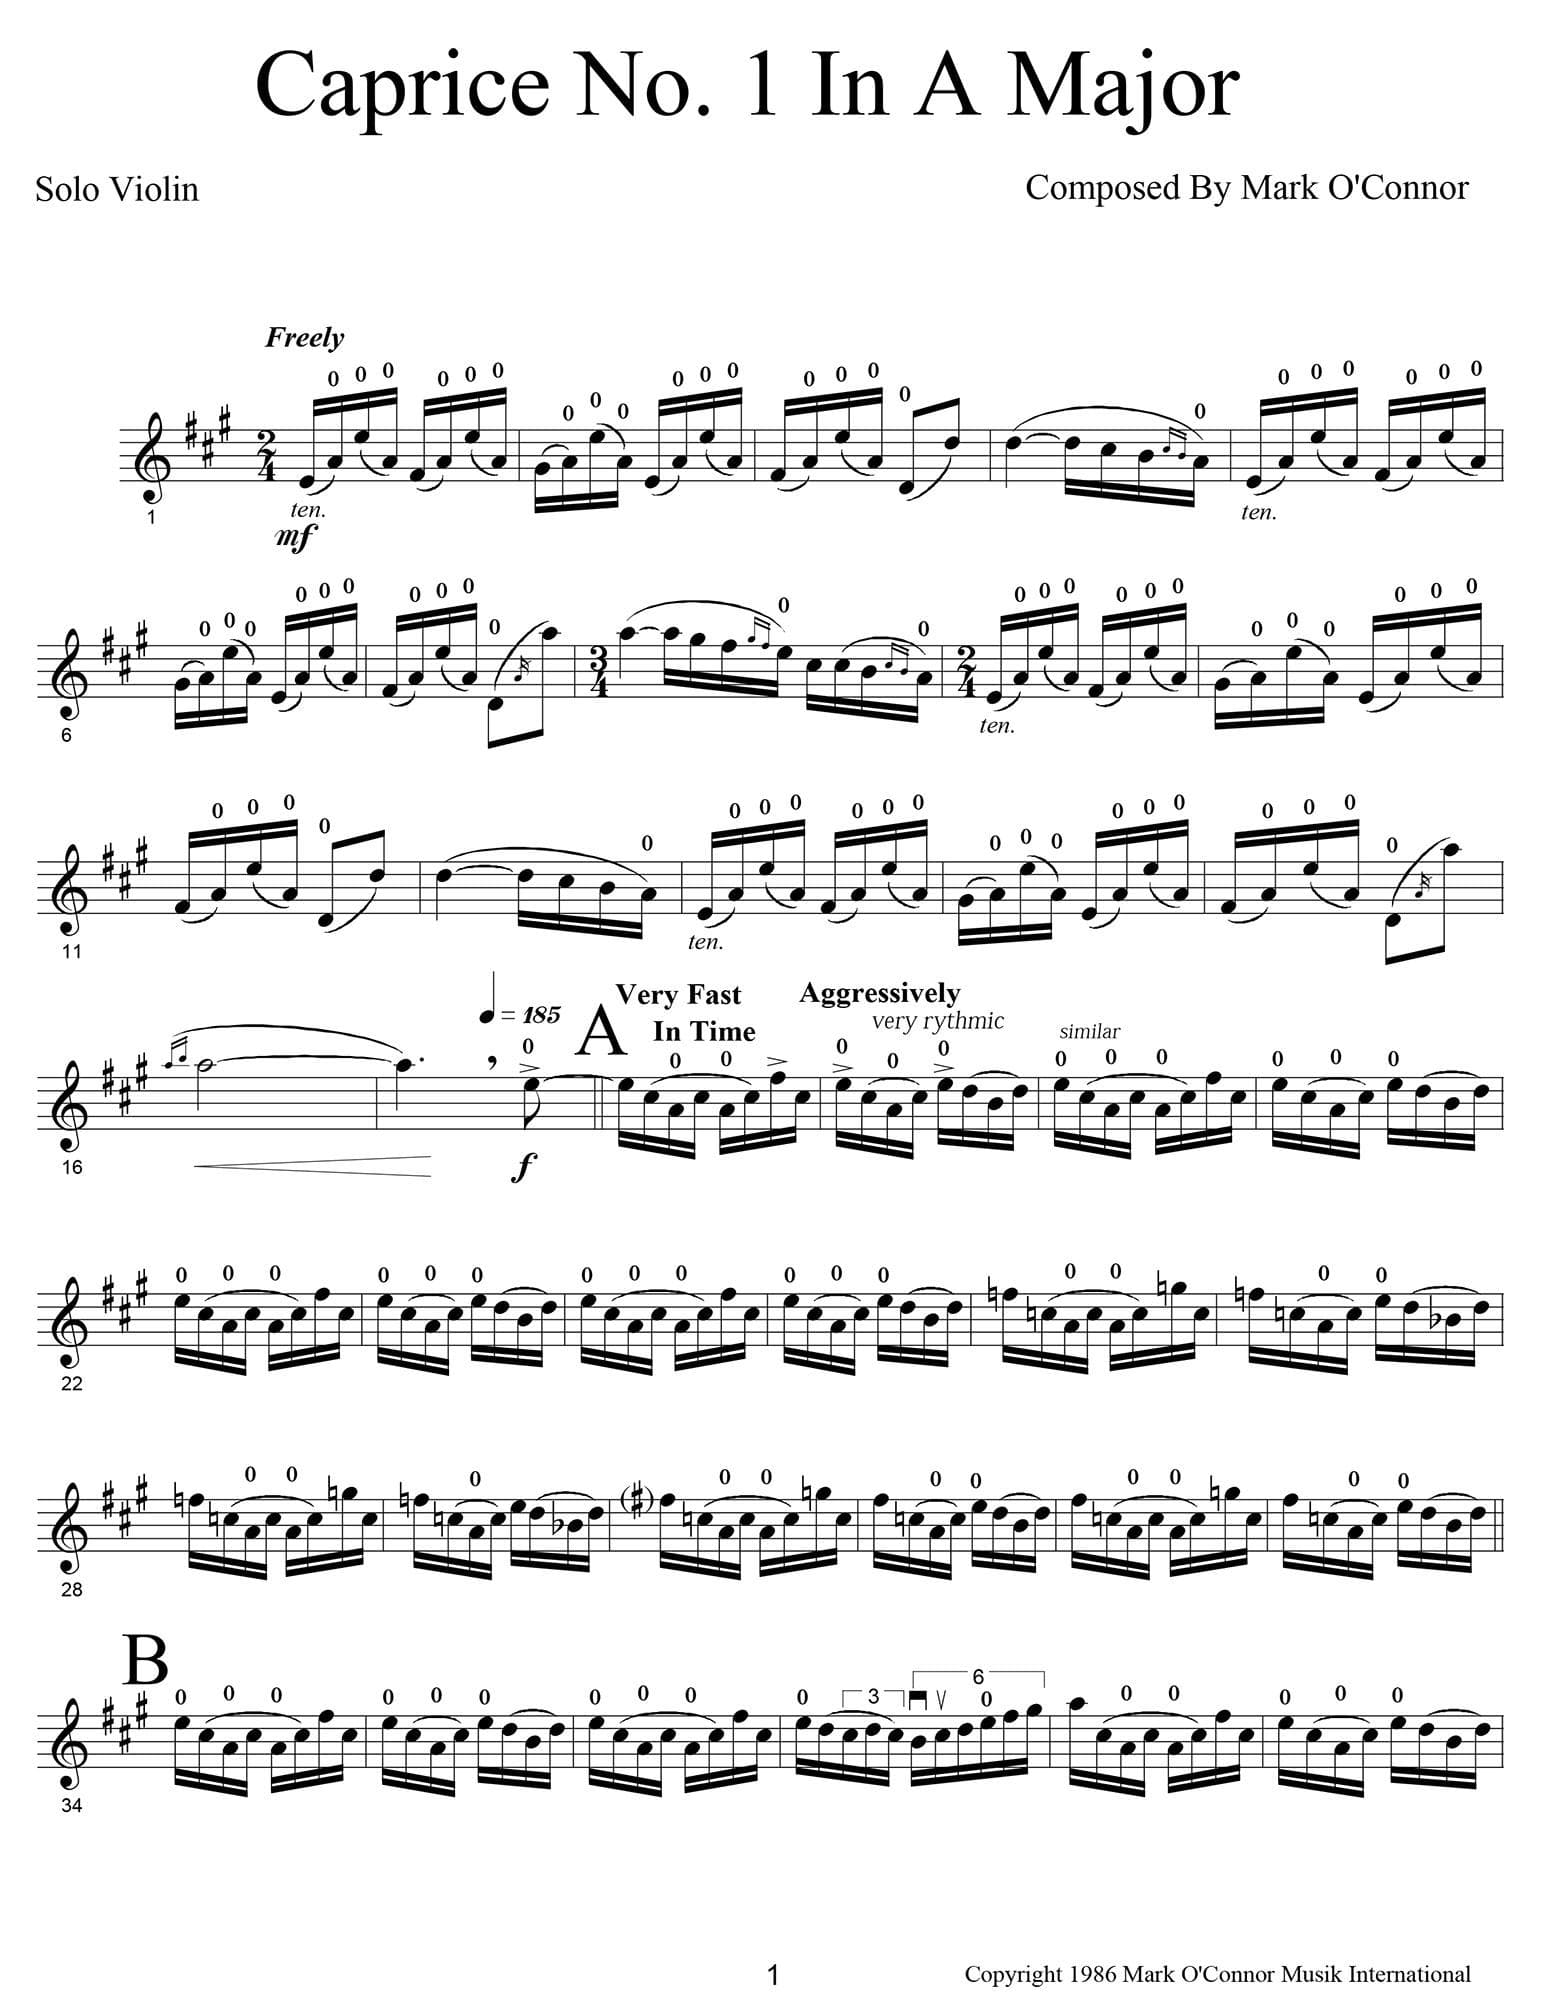 O'Connor, Mark - Caprices No.'s 1-6 for Unaccompanied Violin - Digital Download